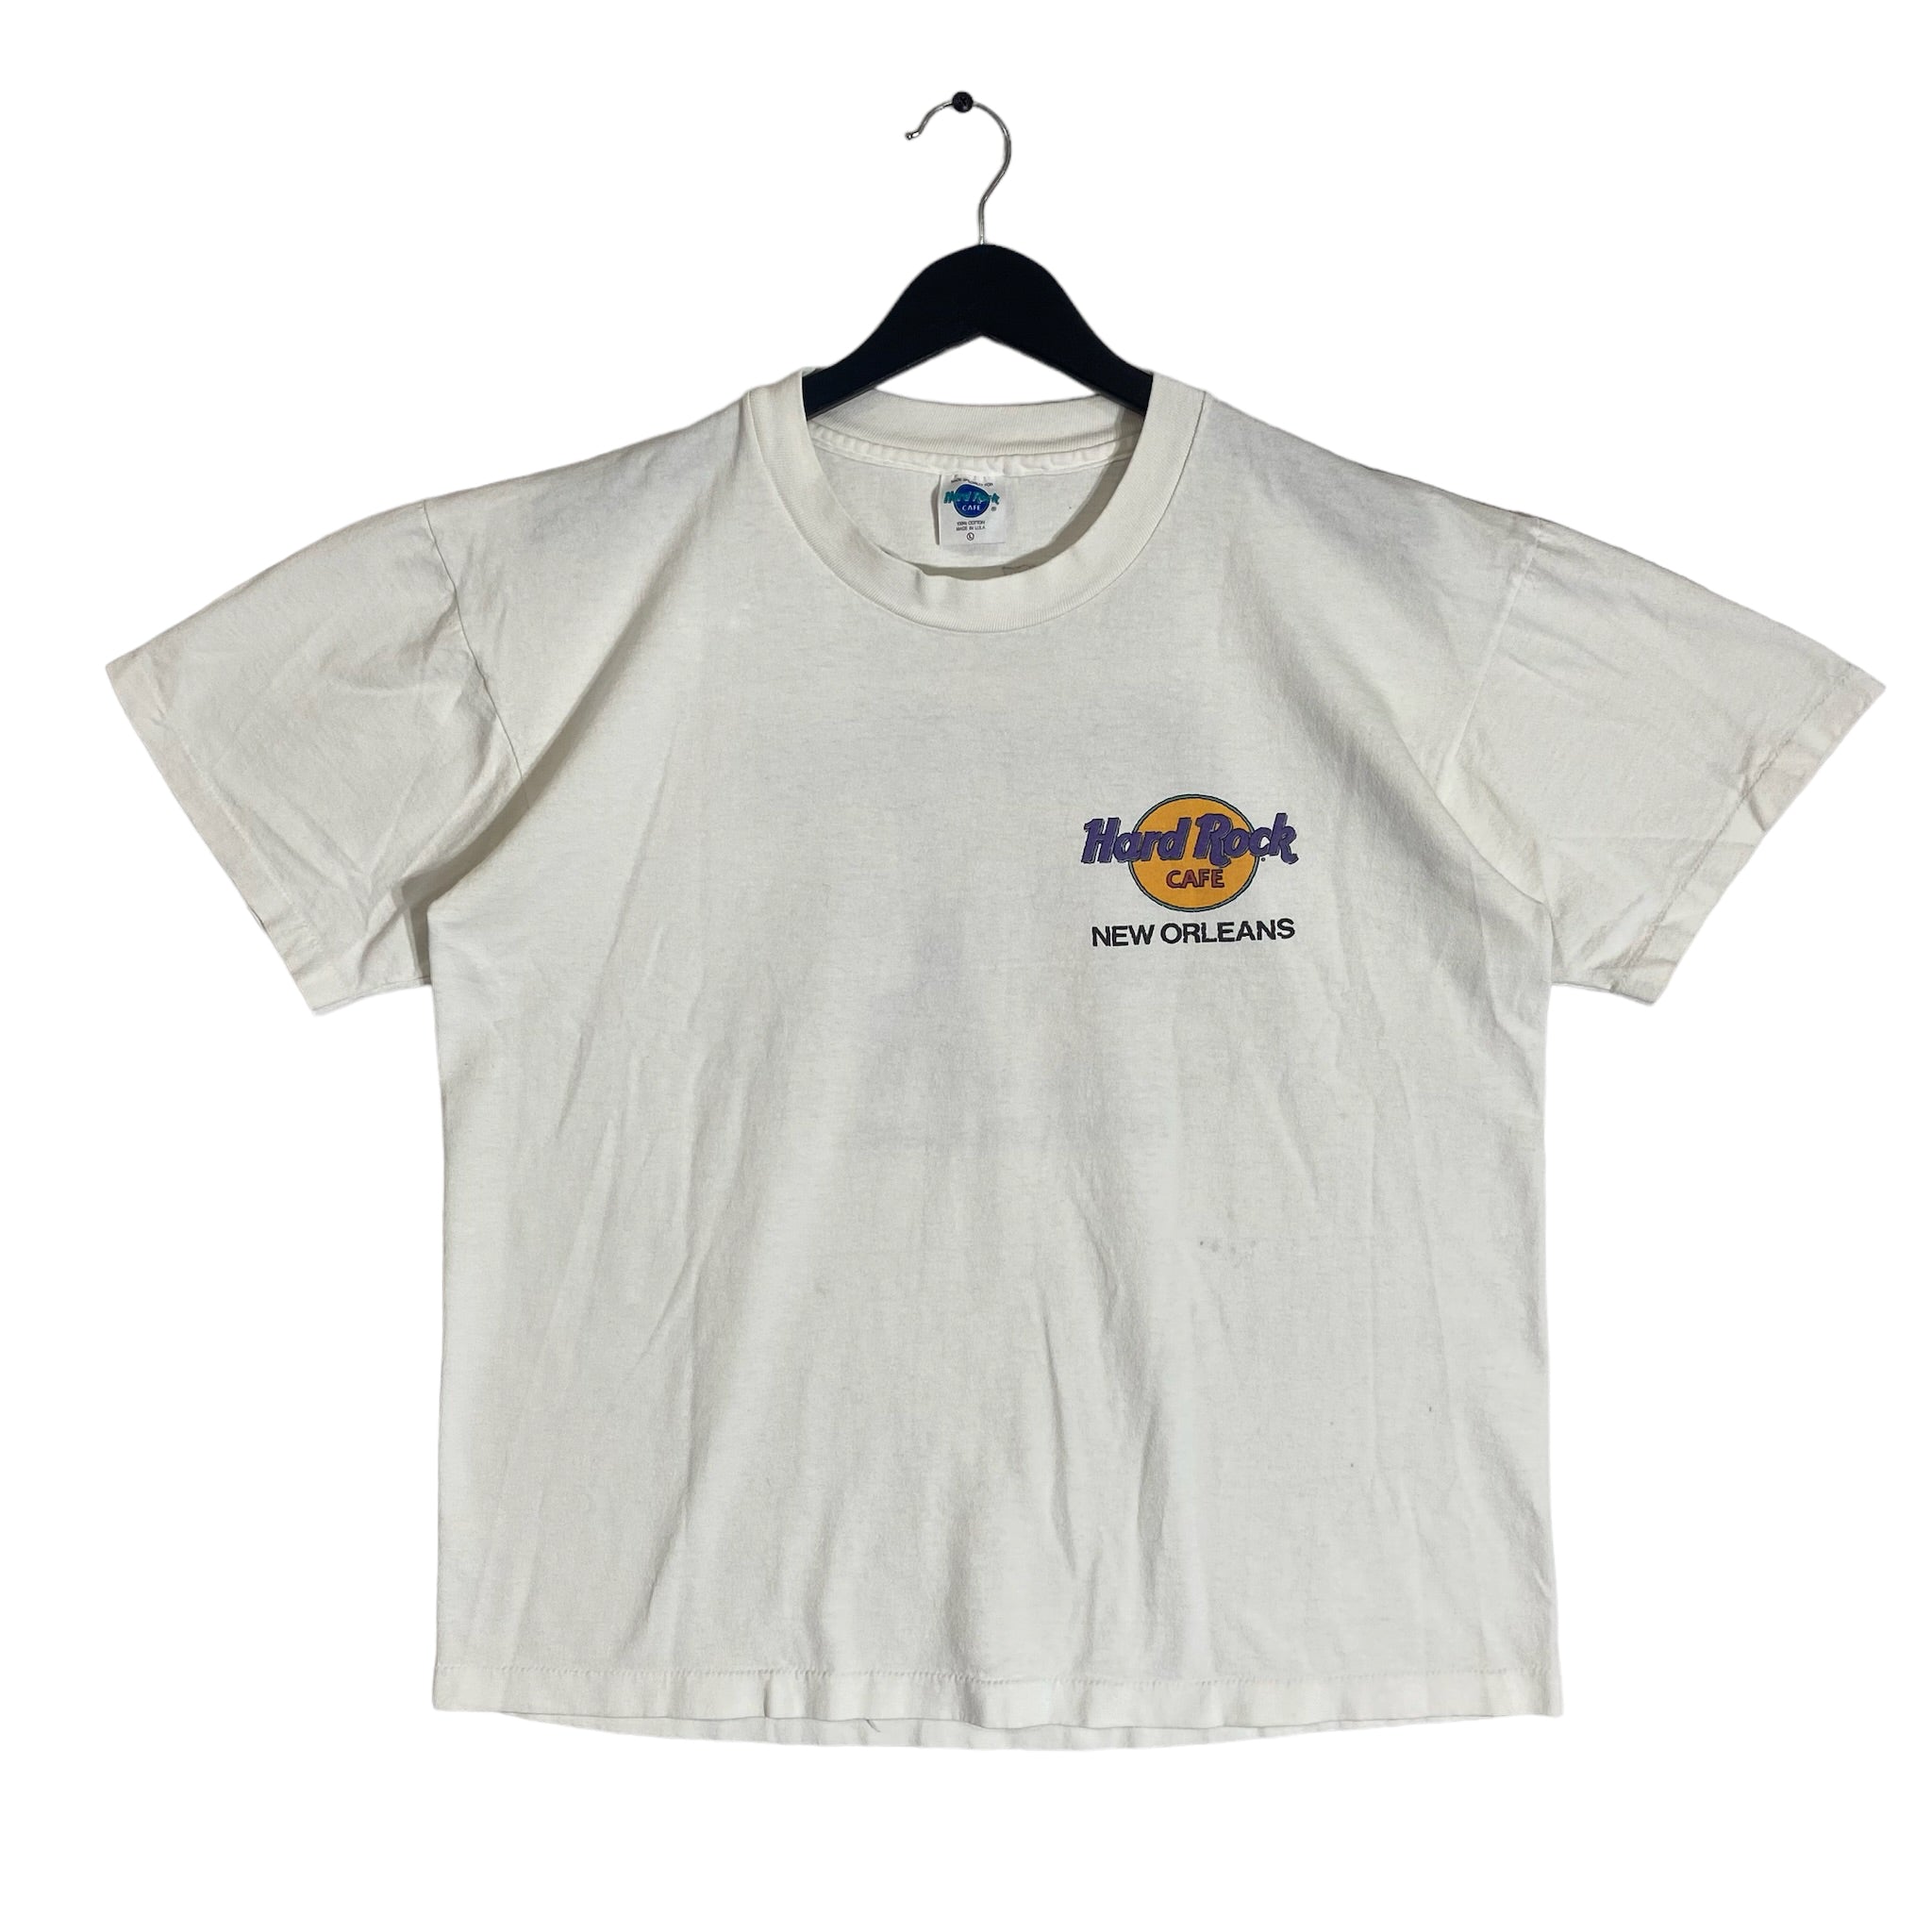 Vintage Hard Rock Cafe New Orleans Shirt 90s